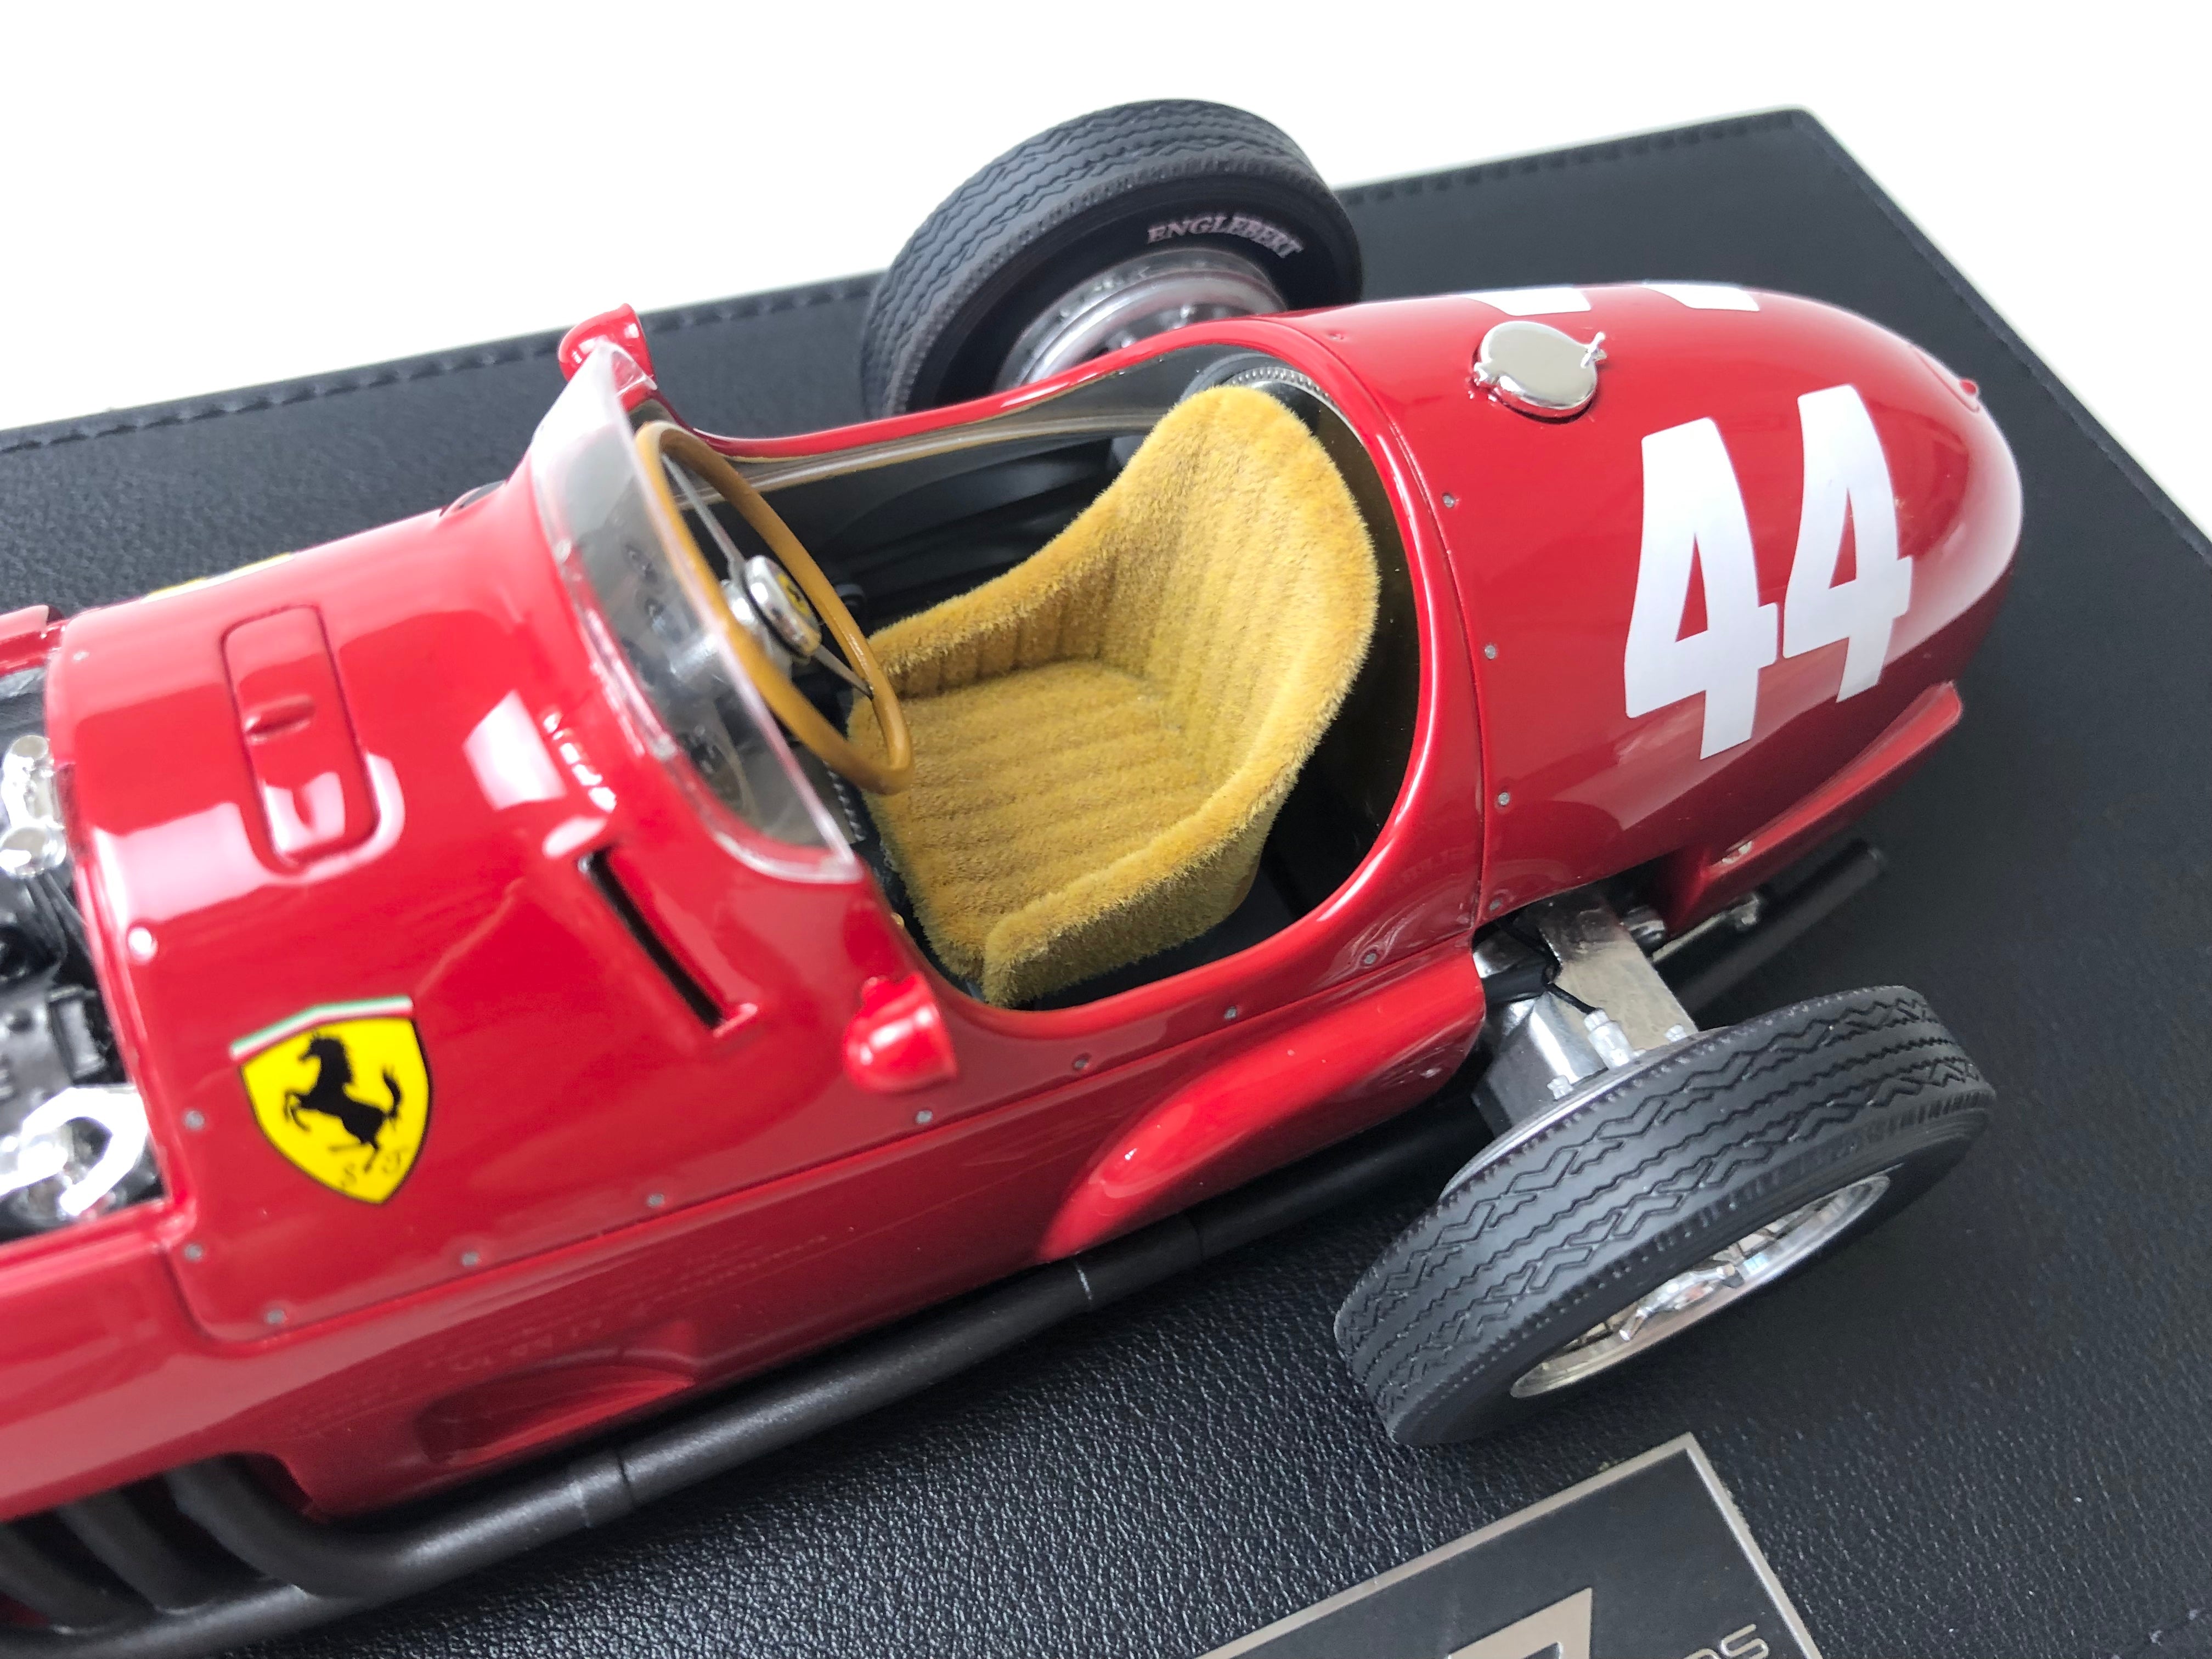 1955 Ferrari 625 #44 Monaco Grand Prix winner 1:18 scale